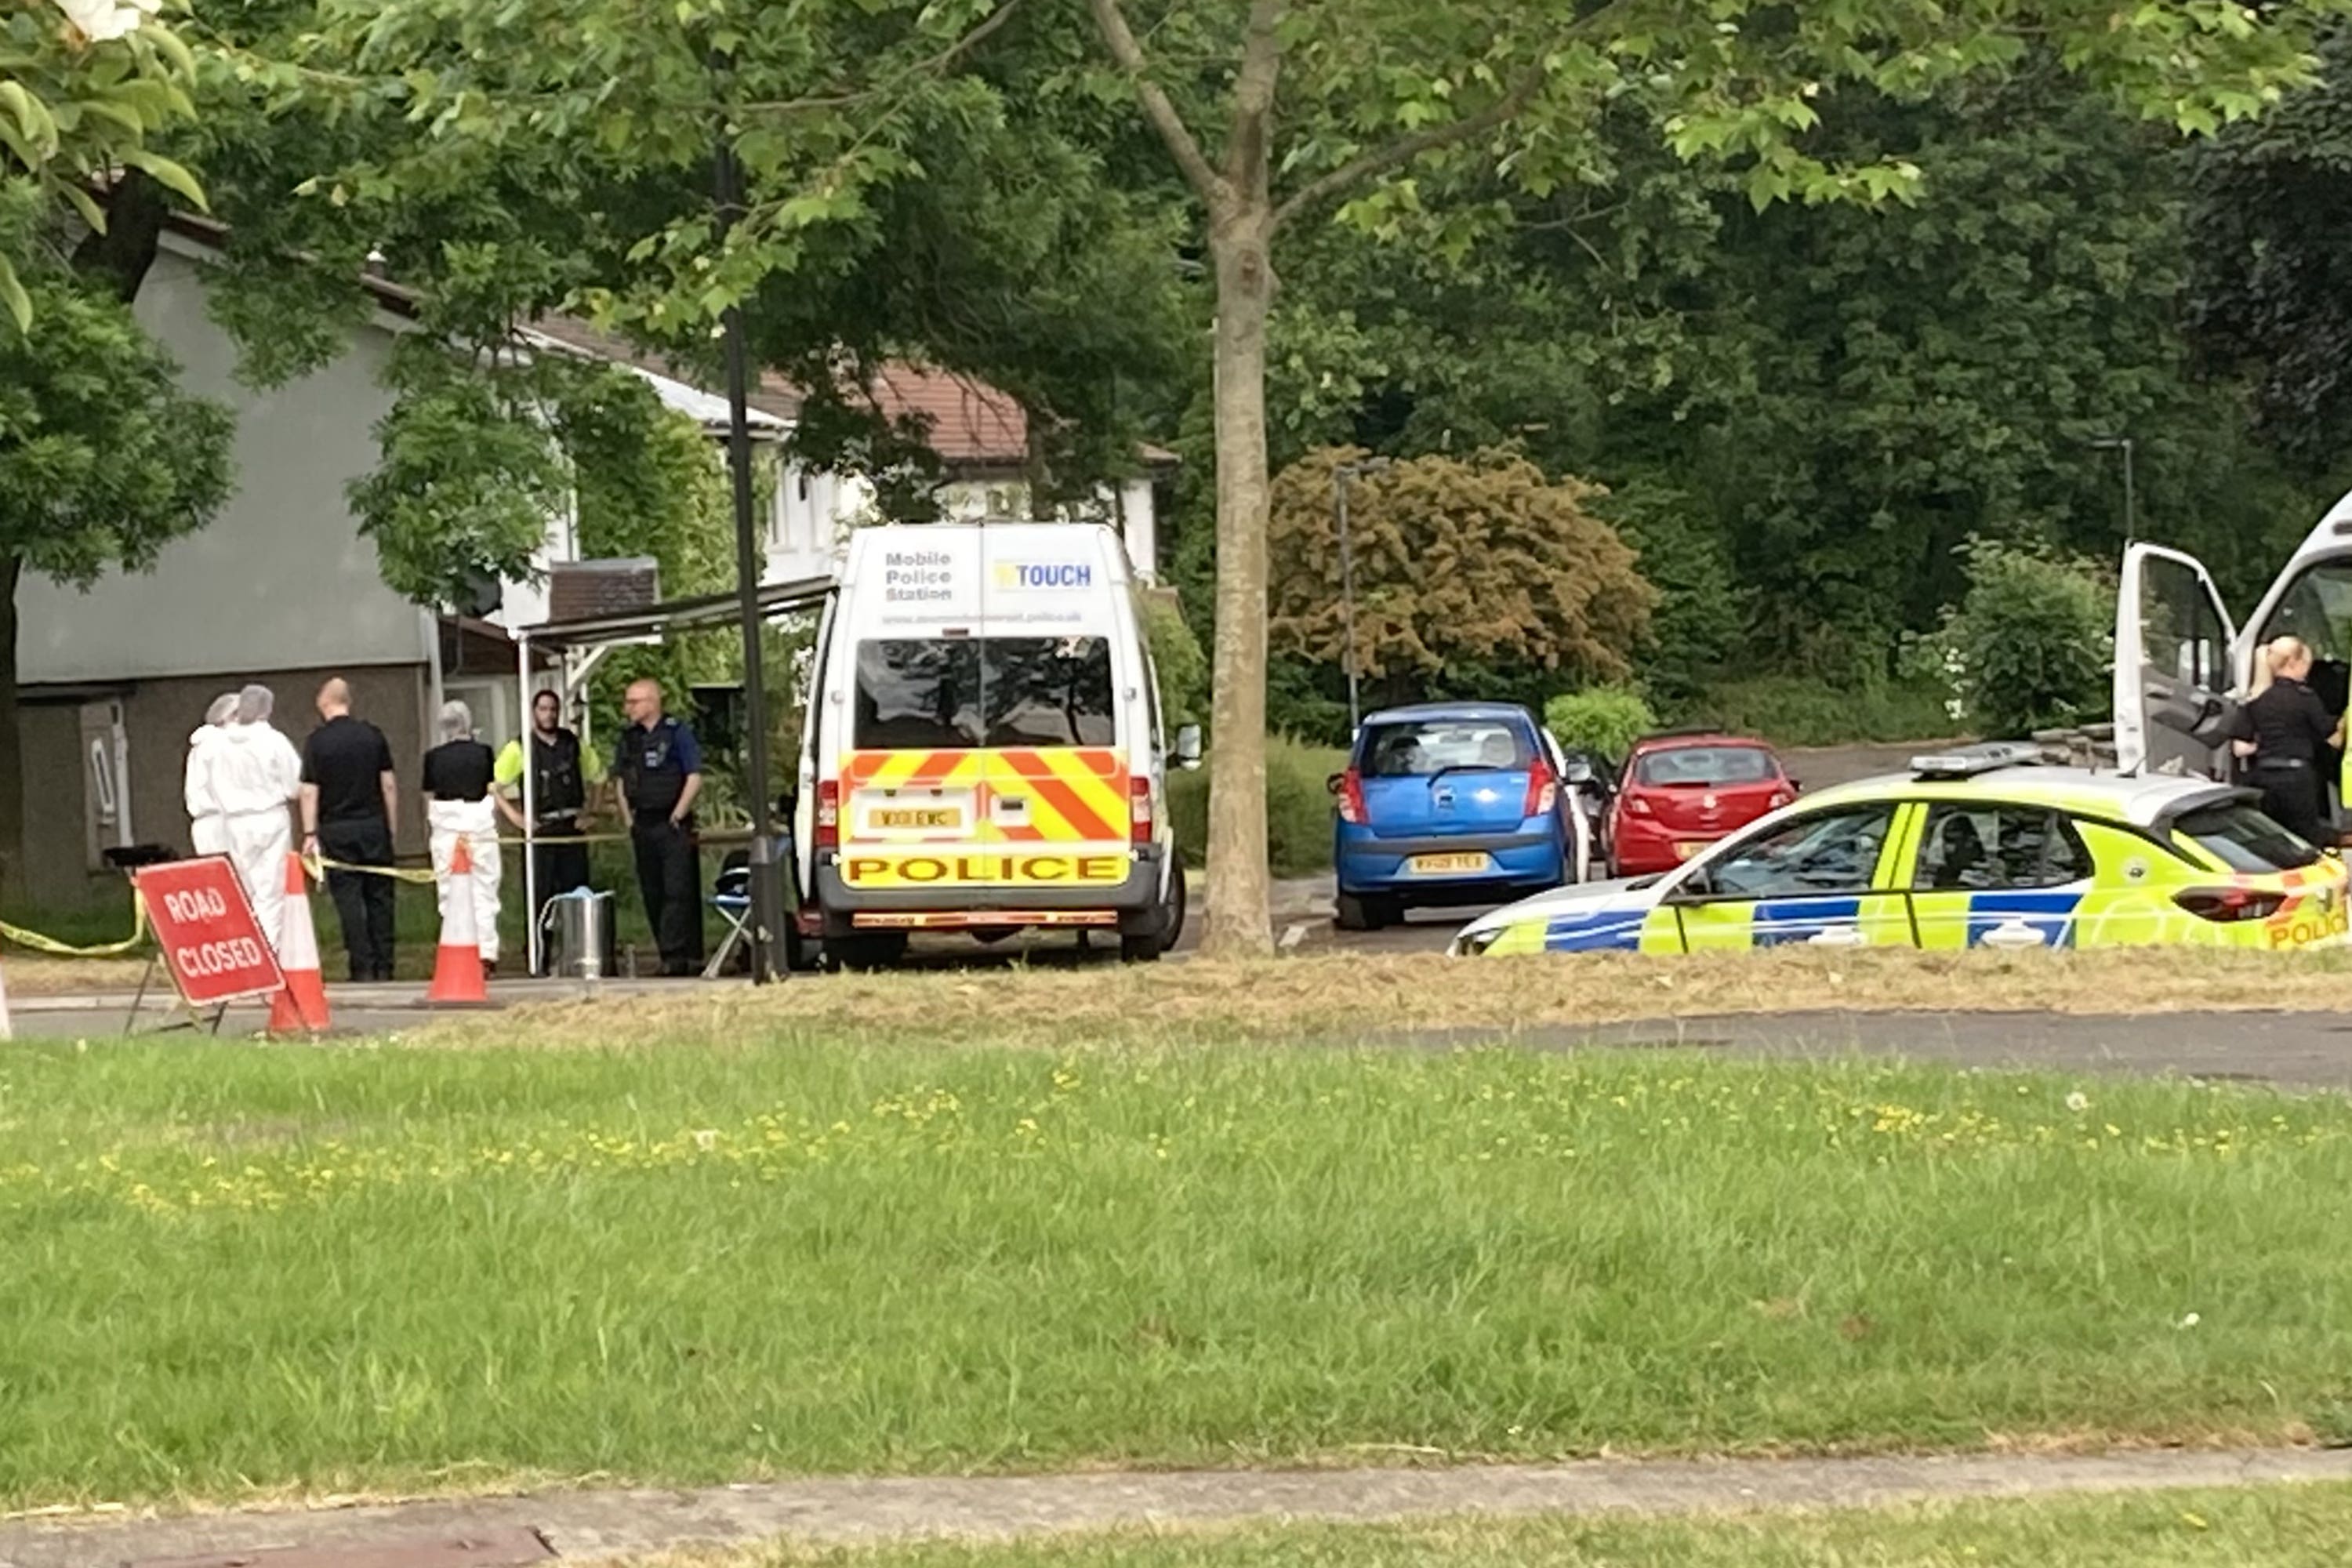 Police at the scene in Bath